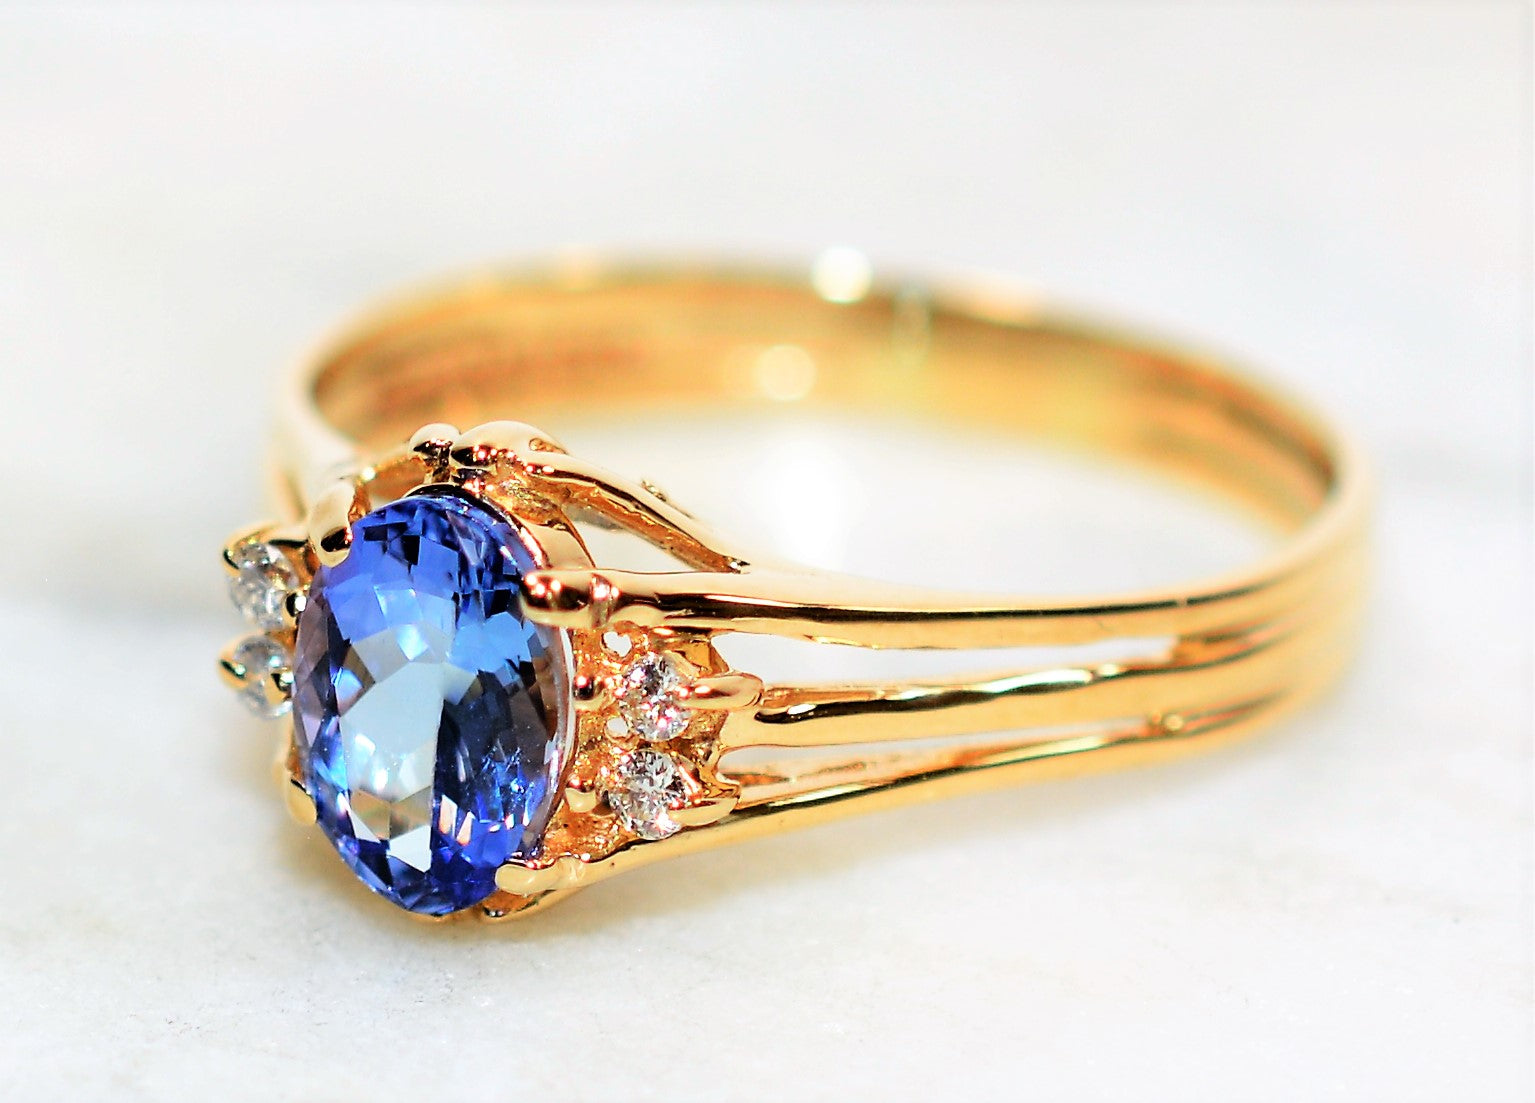 Natural Tanzanite & Diamond Ring 14K Solid Gold .88tcw Gemstone Ring Statement Ring Ladies Ring Women's Ring December Birthstone Ring Estate